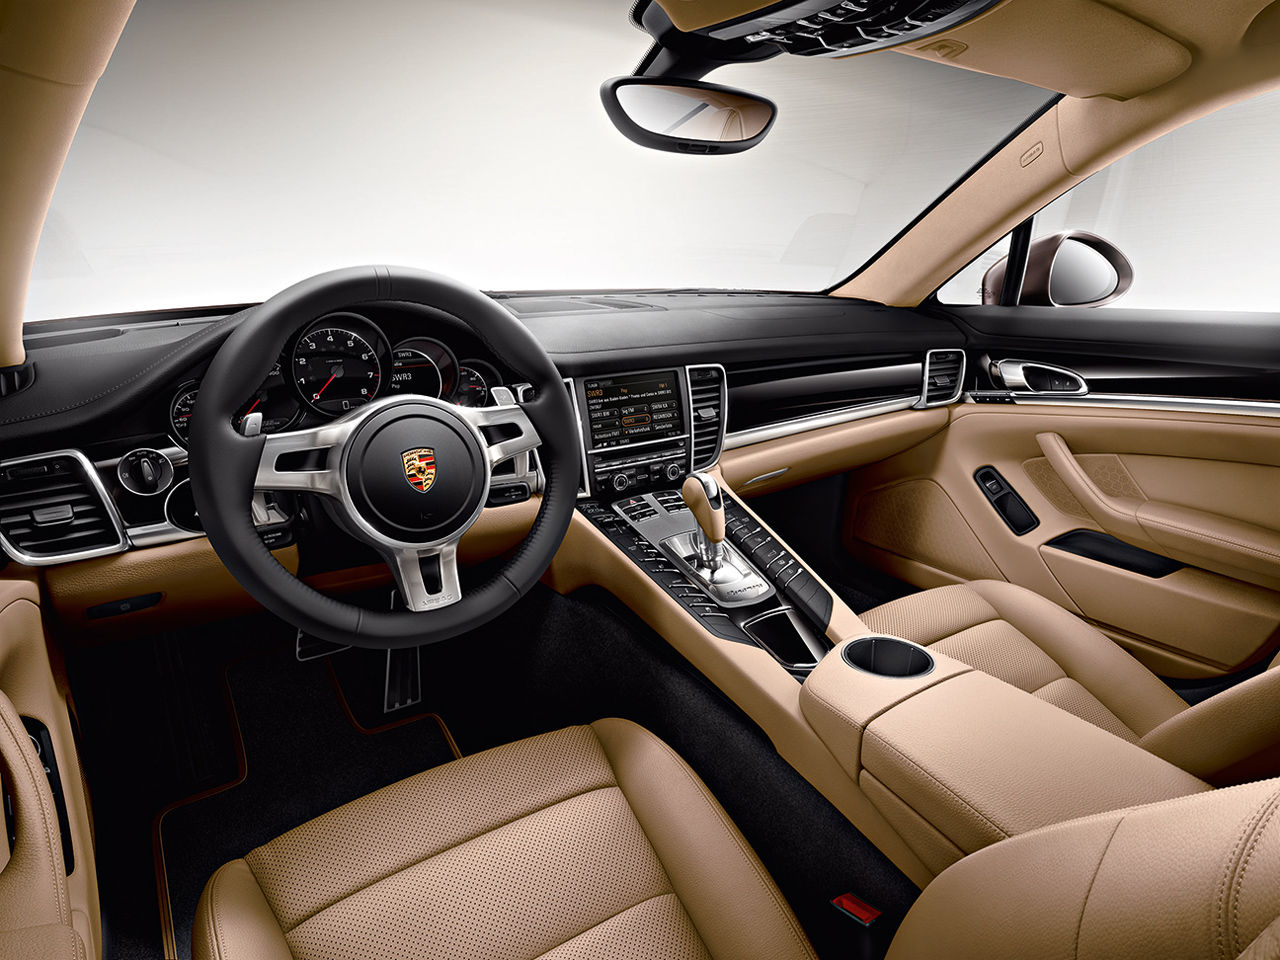 Porsche Panamera Platinum Edition 2013 interior